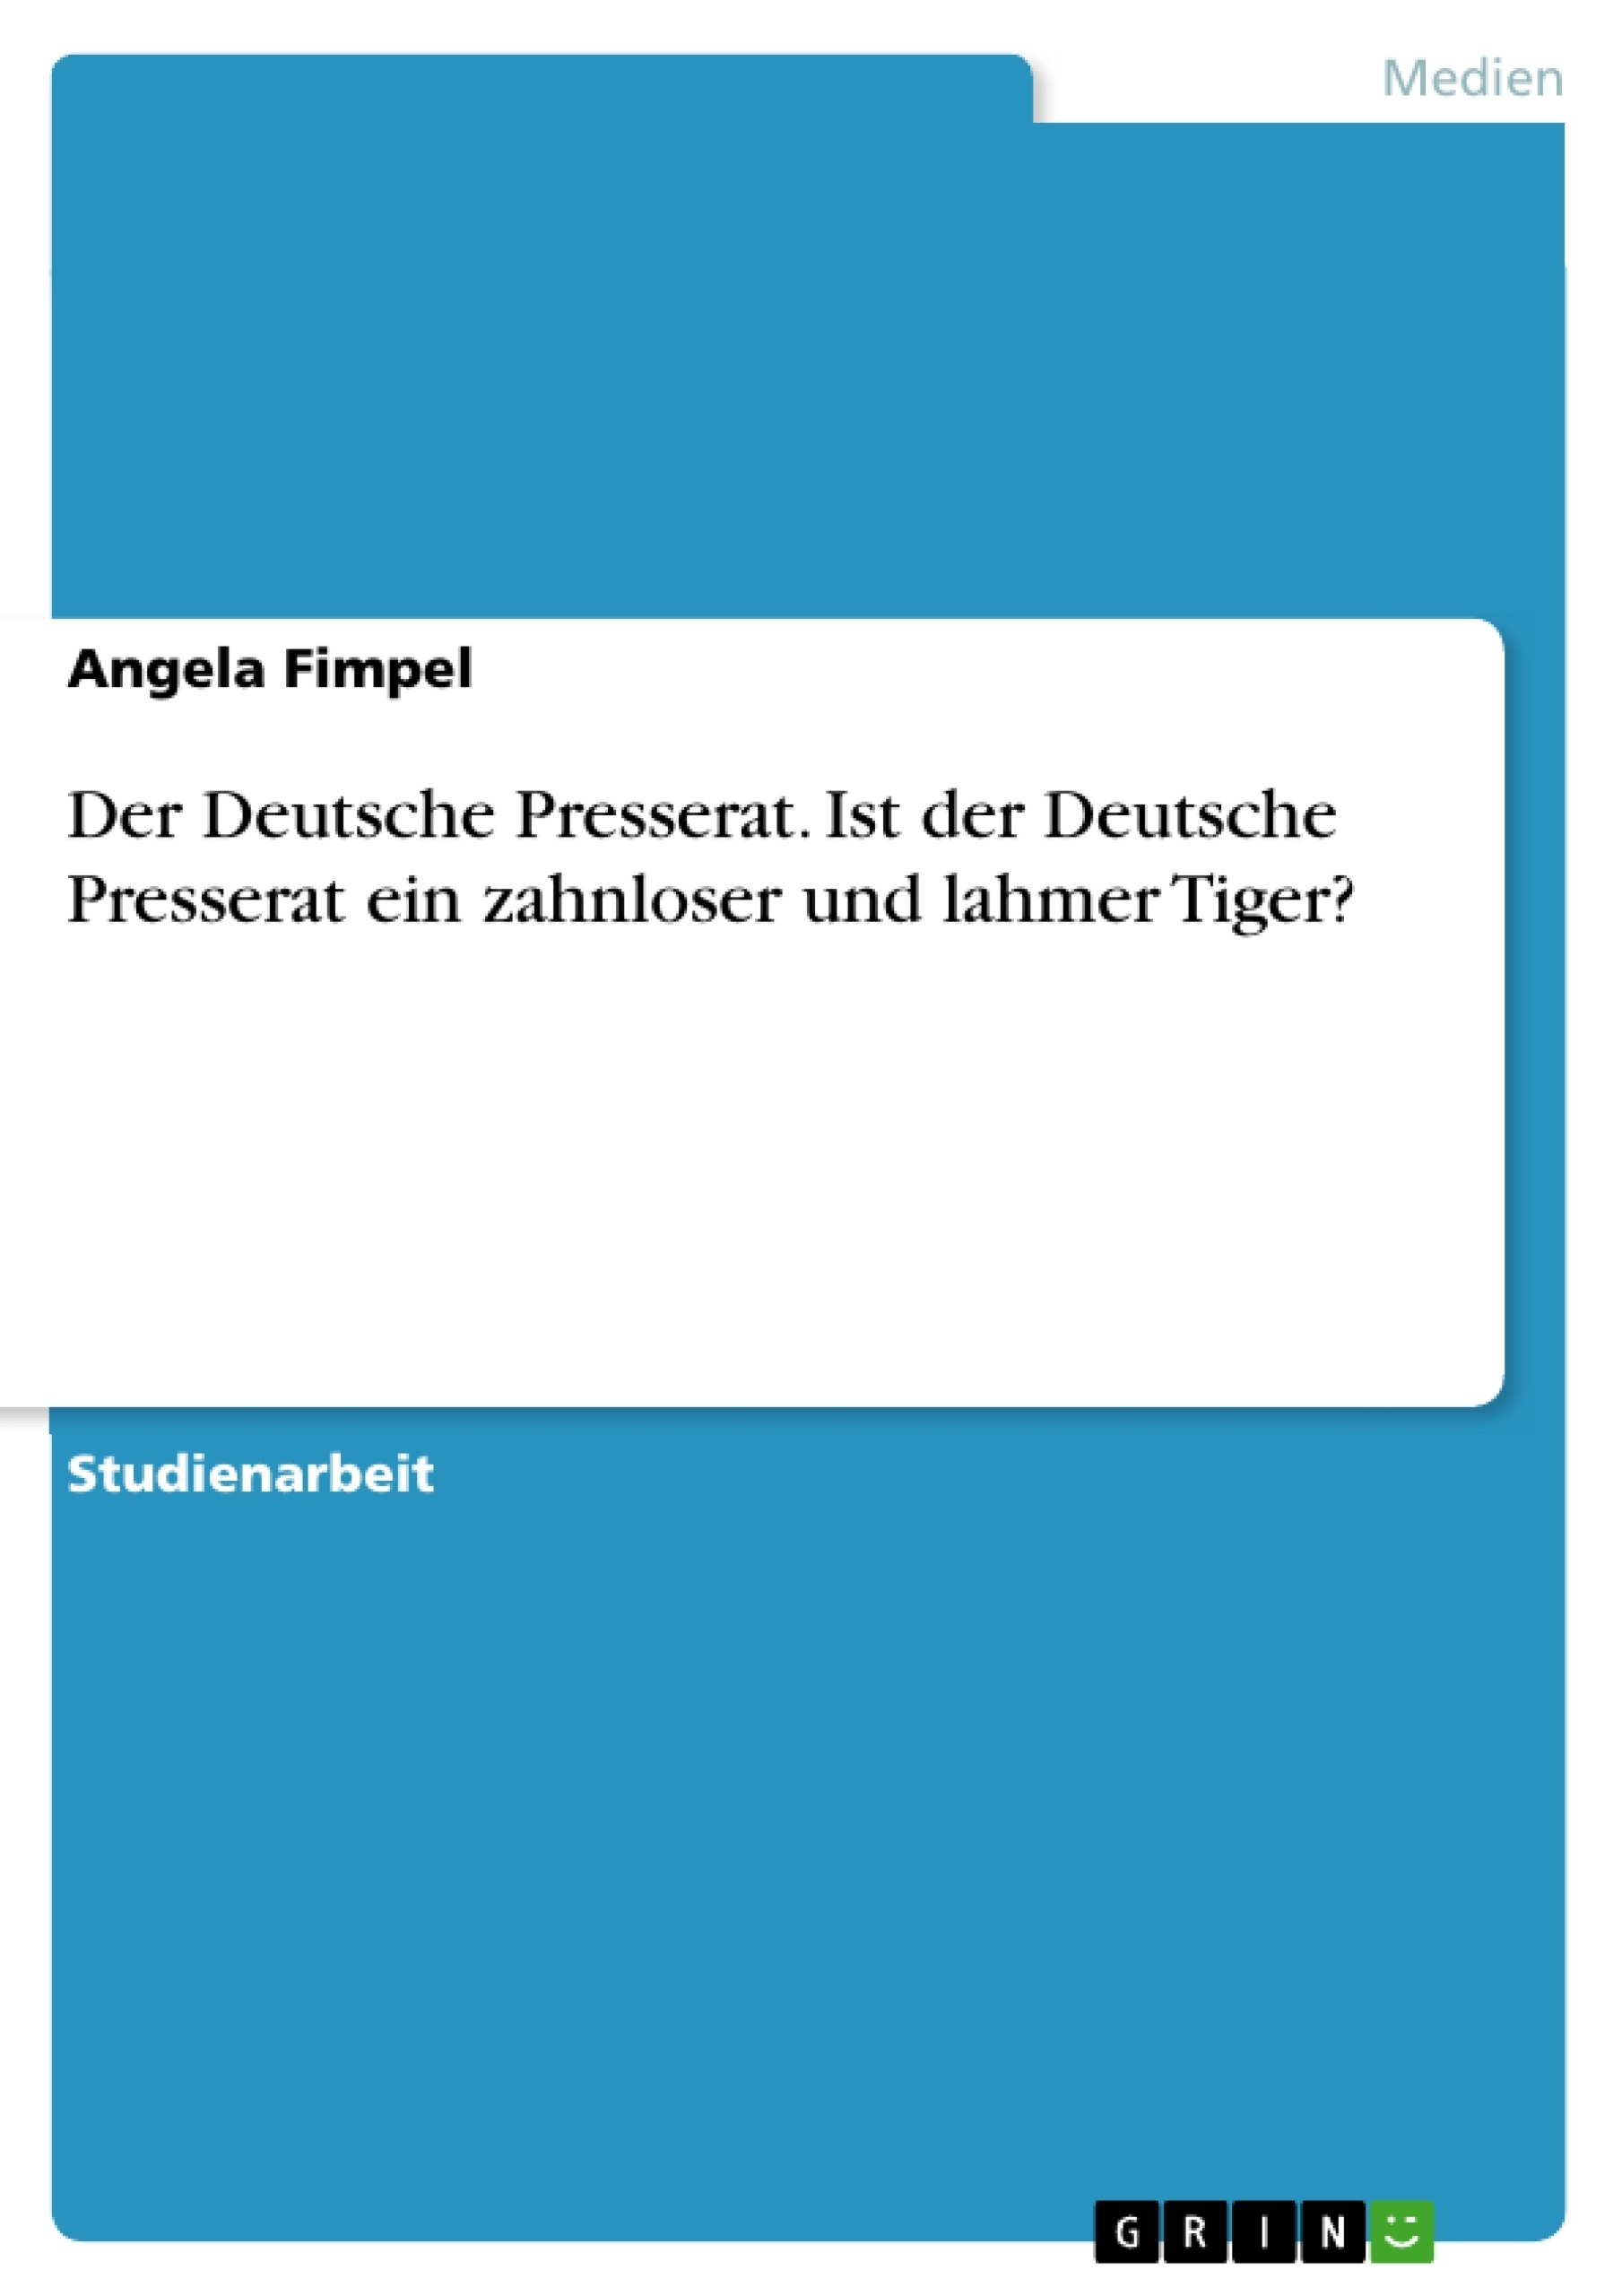 Title: Der Deutsche Presserat. Ist der Deutsche Presserat ein zahnloser und lahmer Tiger?